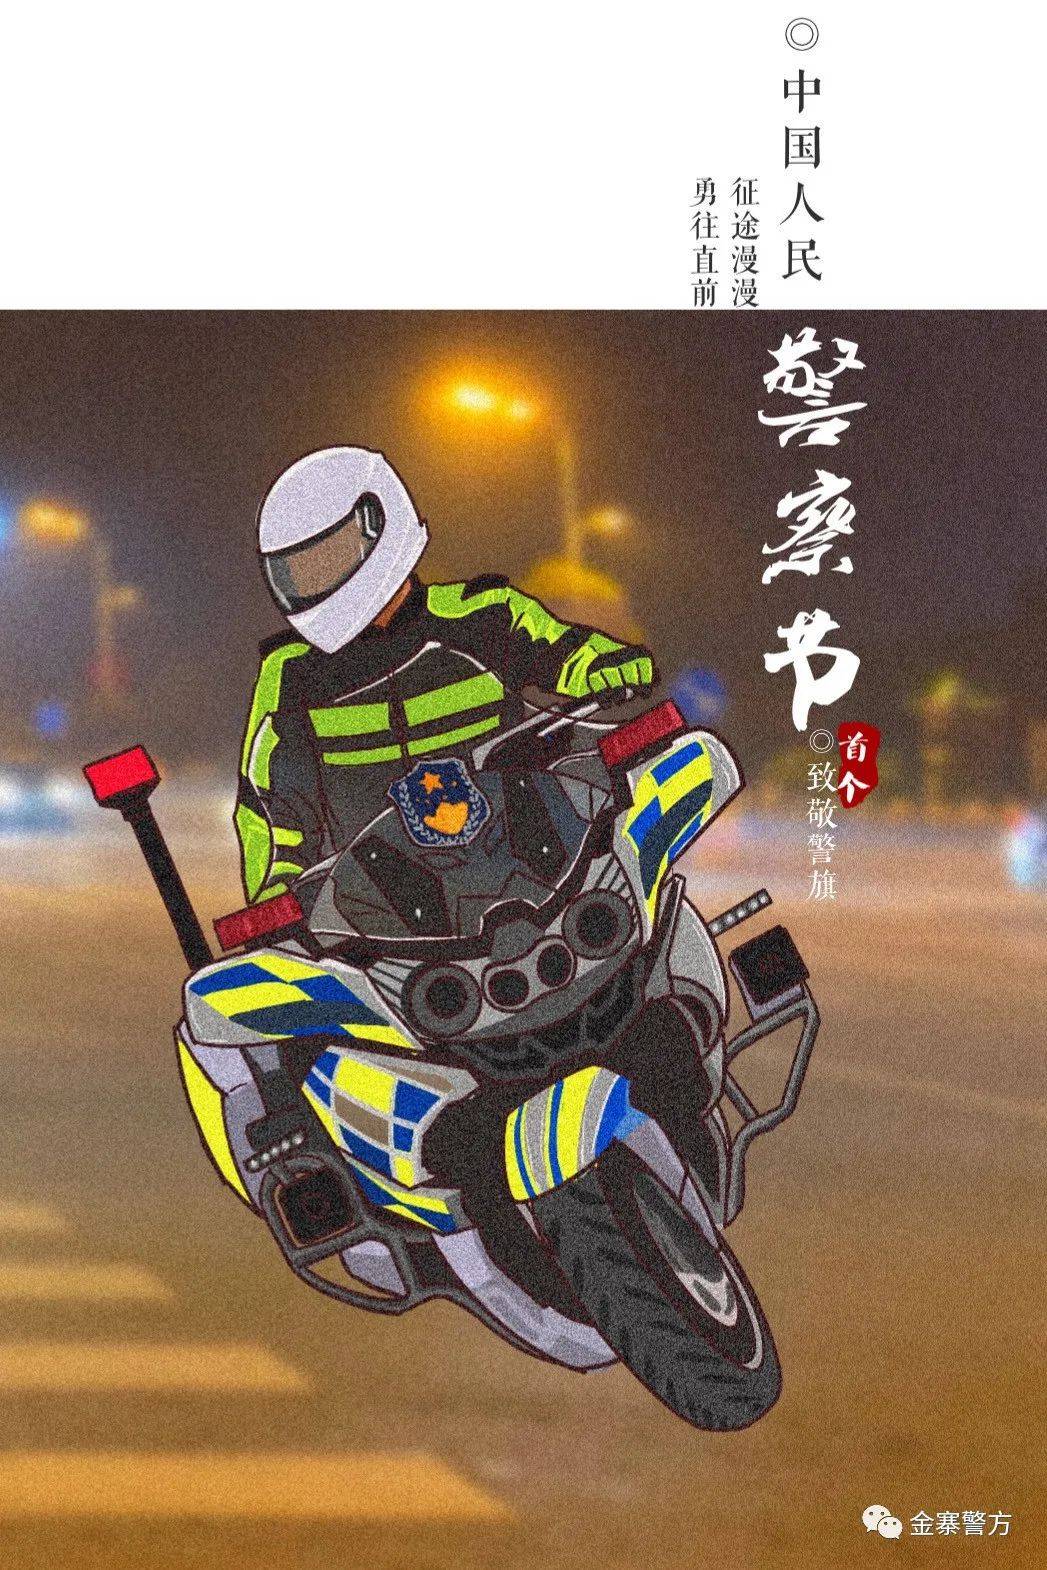 六安女警手绘漫画献礼警察节!